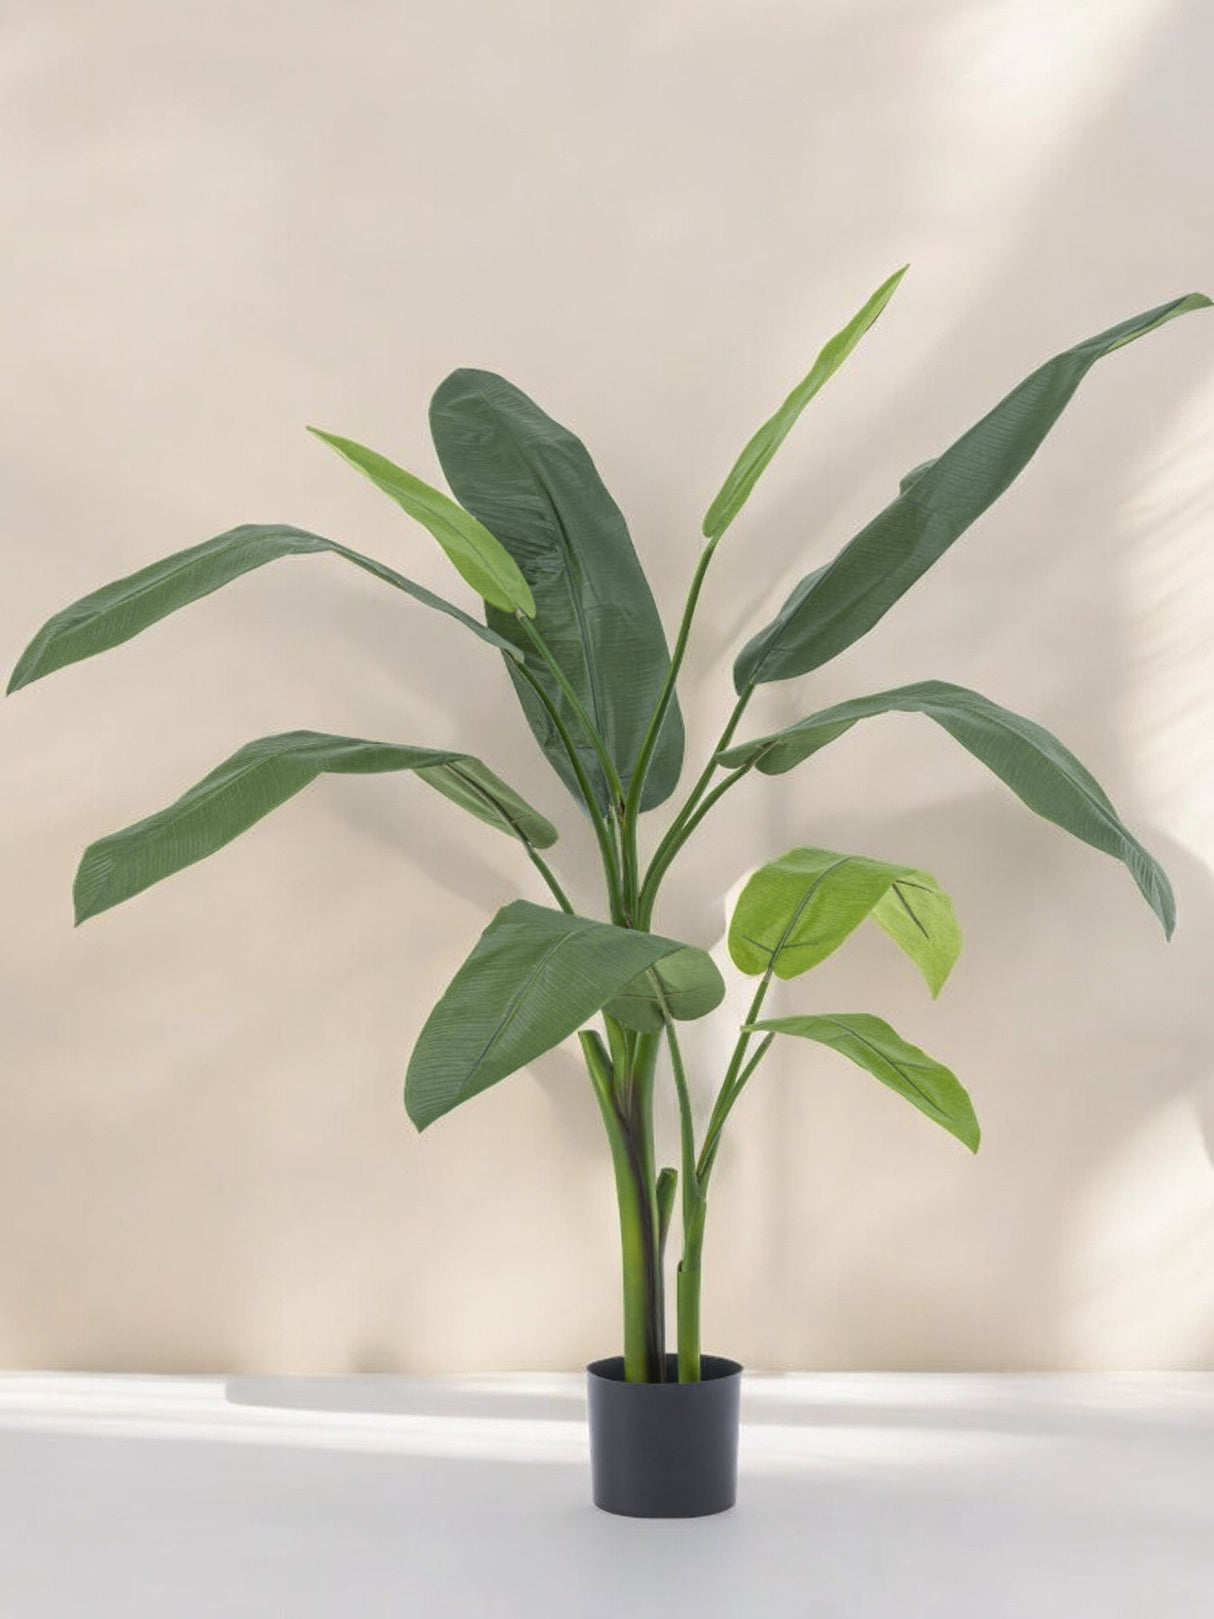 Livraison plante Heliconia Deluxe - grande plante artificielle